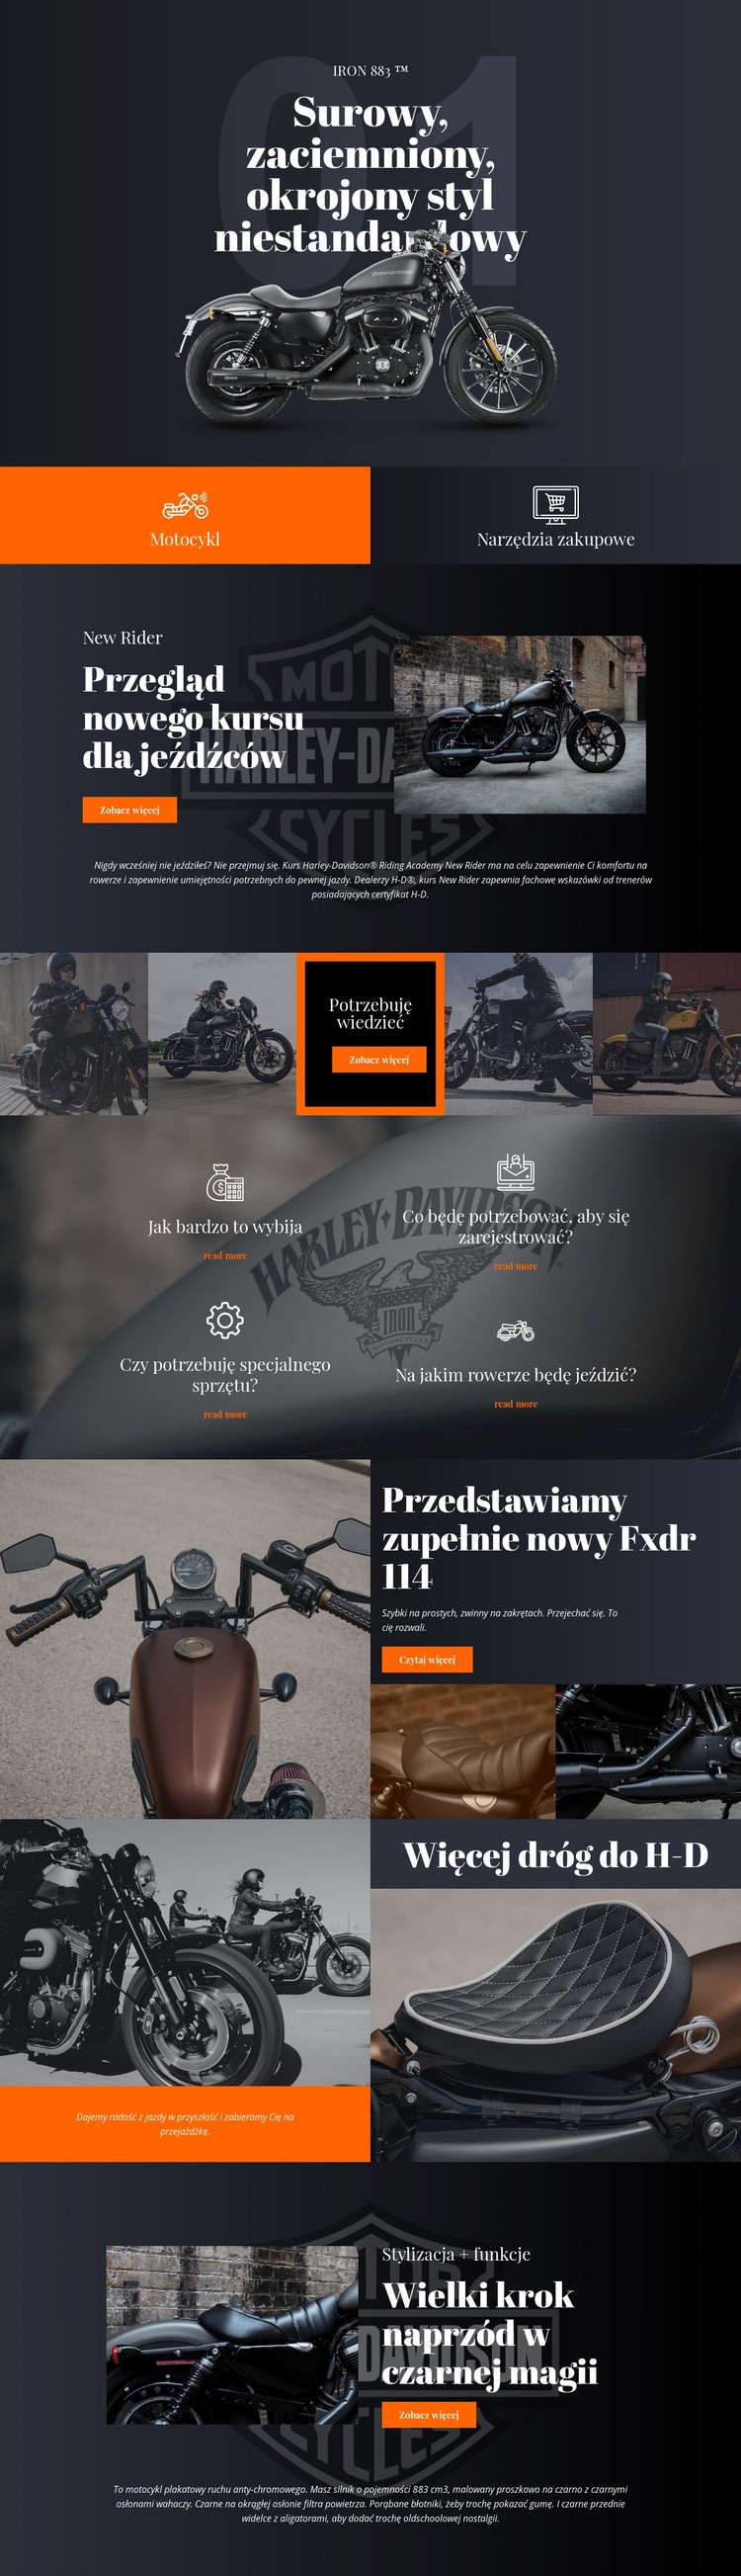 Harley Davidson Makieta strony internetowej